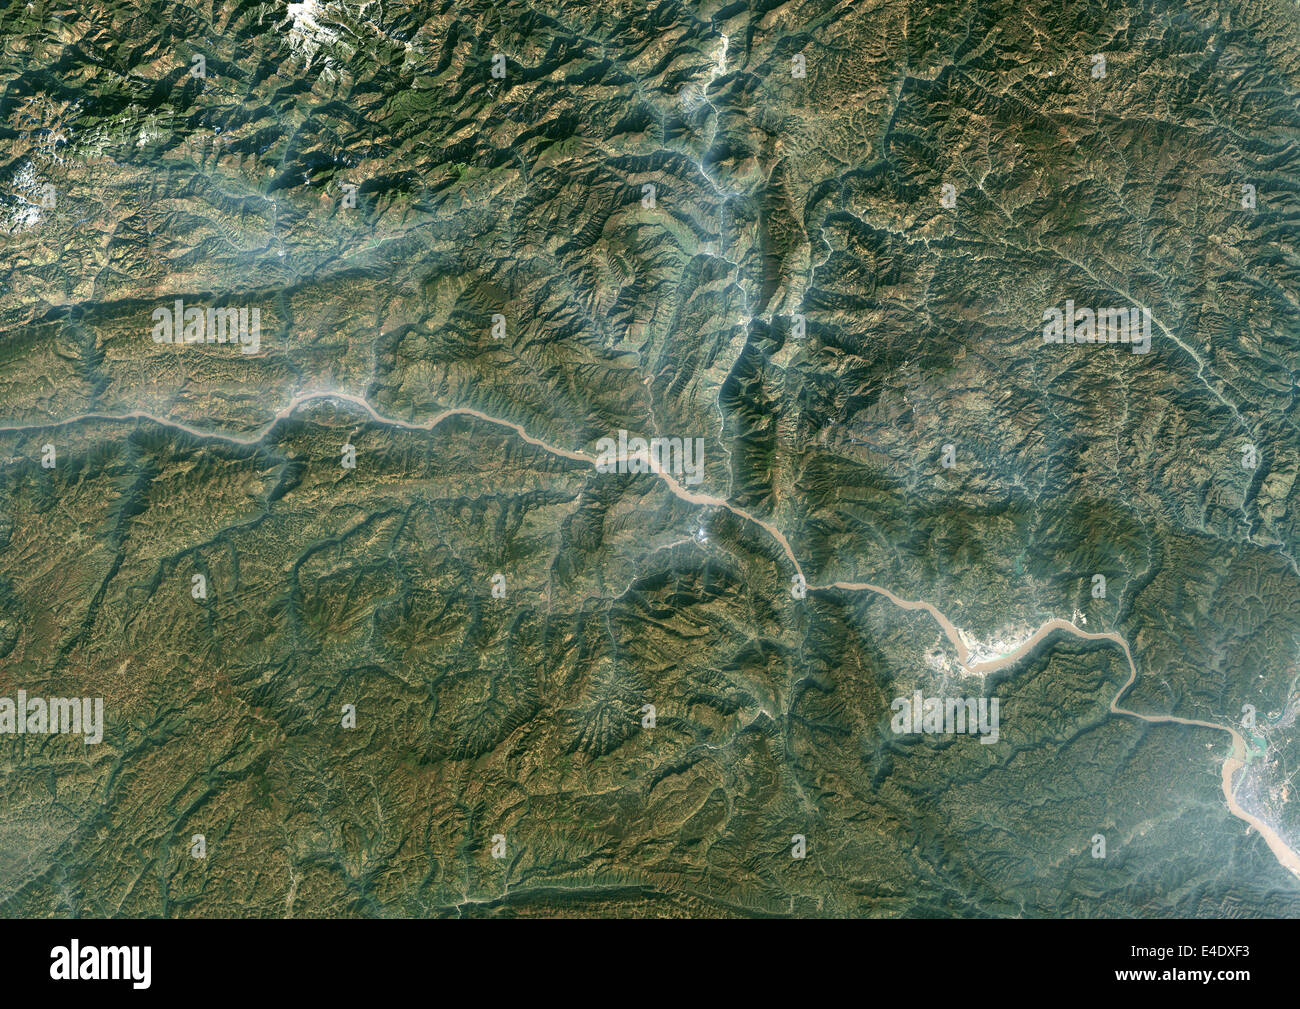 Región de las Tres Gargantas, en China, en 1987, Imagen de satélite de color verdadero. True color imagen de satélite de la región de las Tres Gargantas a lo largo de t Foto de stock